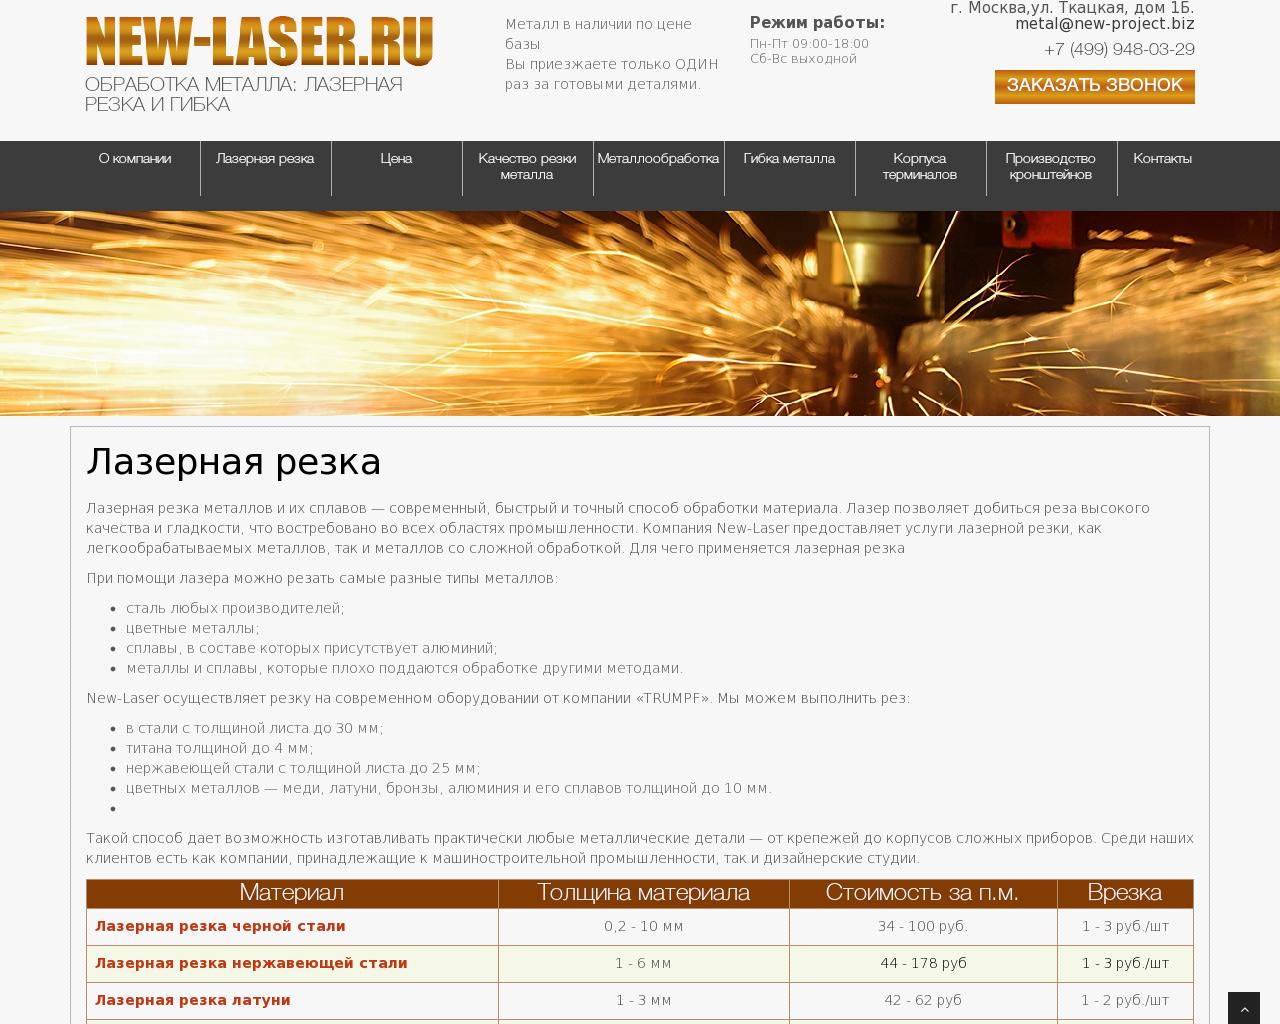 Изображение сайта new-laser.ru в разрешении 1280x1024